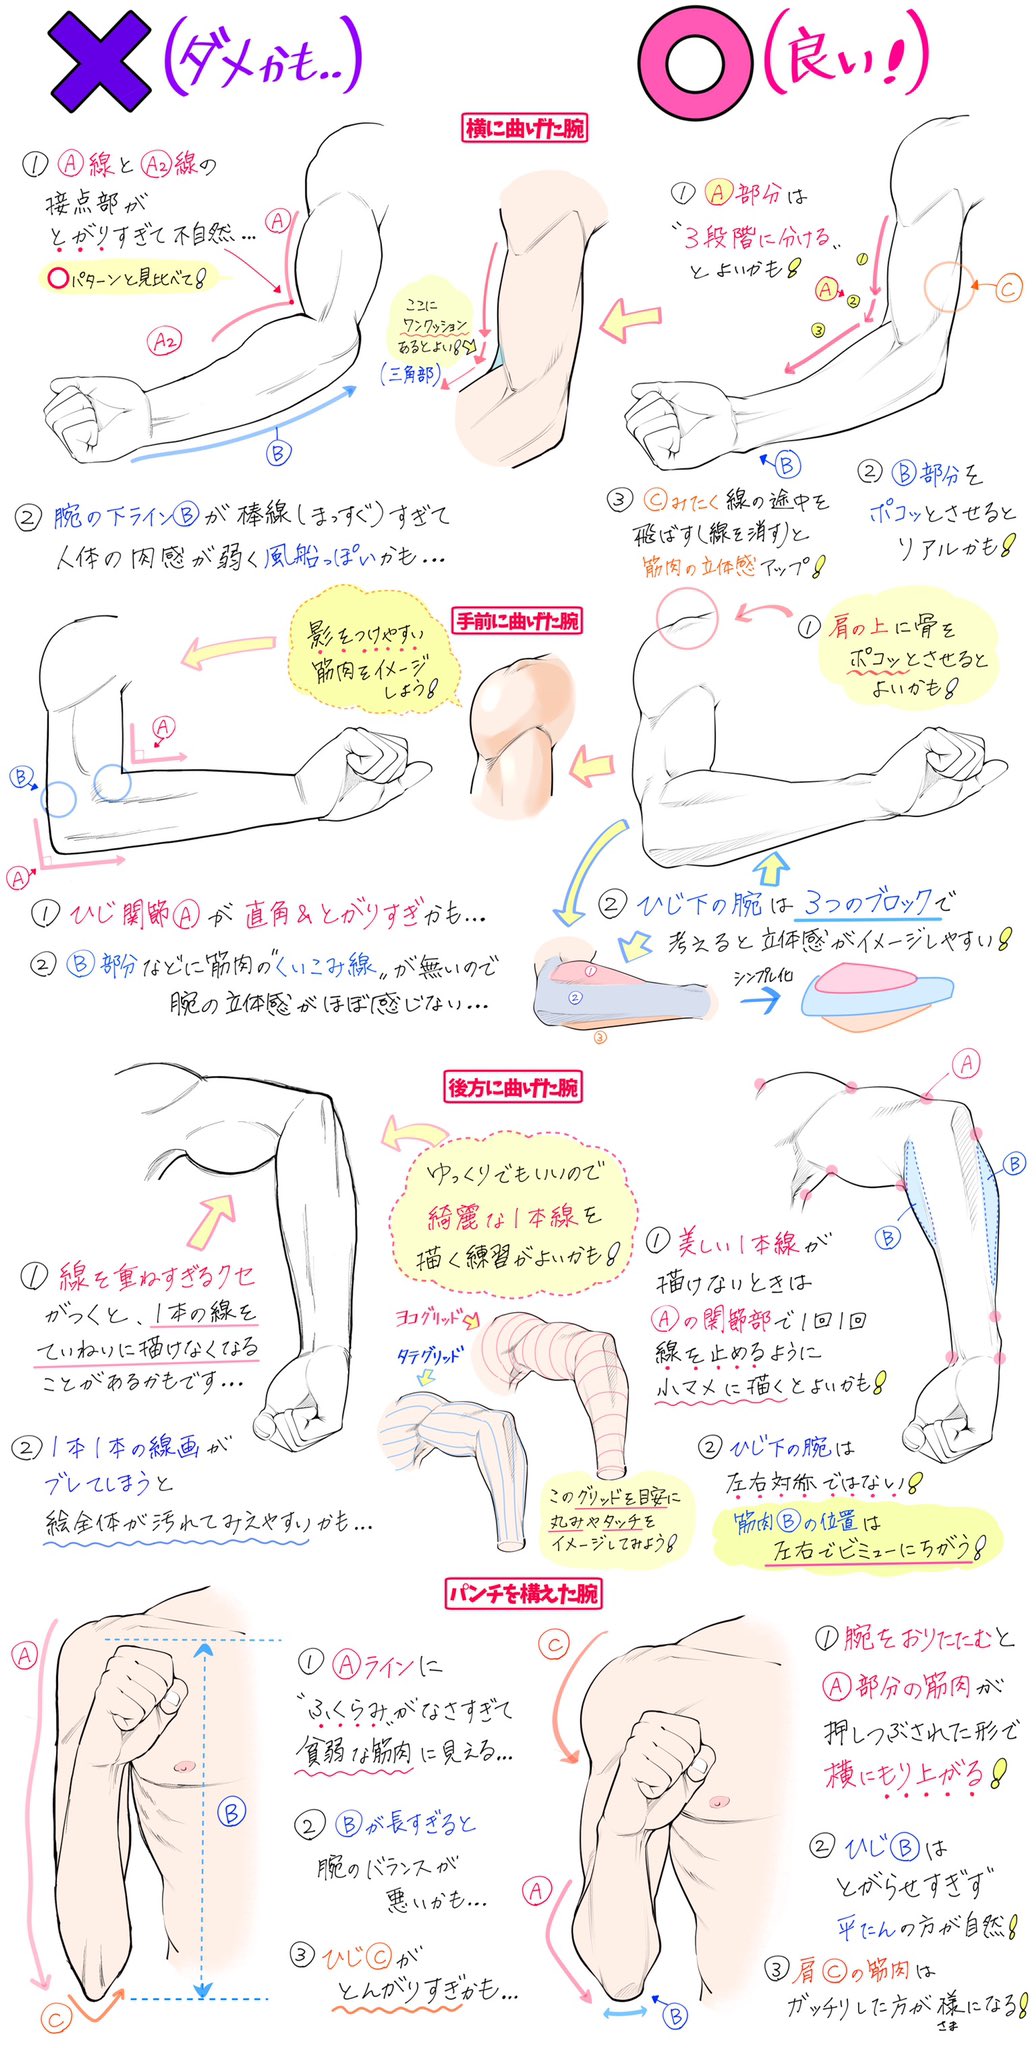 吉村拓也 イラスト講座 男性の筋肉パーツの描き方 パッと見てわかりやすい 筋肉の形 ダメかも と いいかも T Co Limtnxqren Twitter